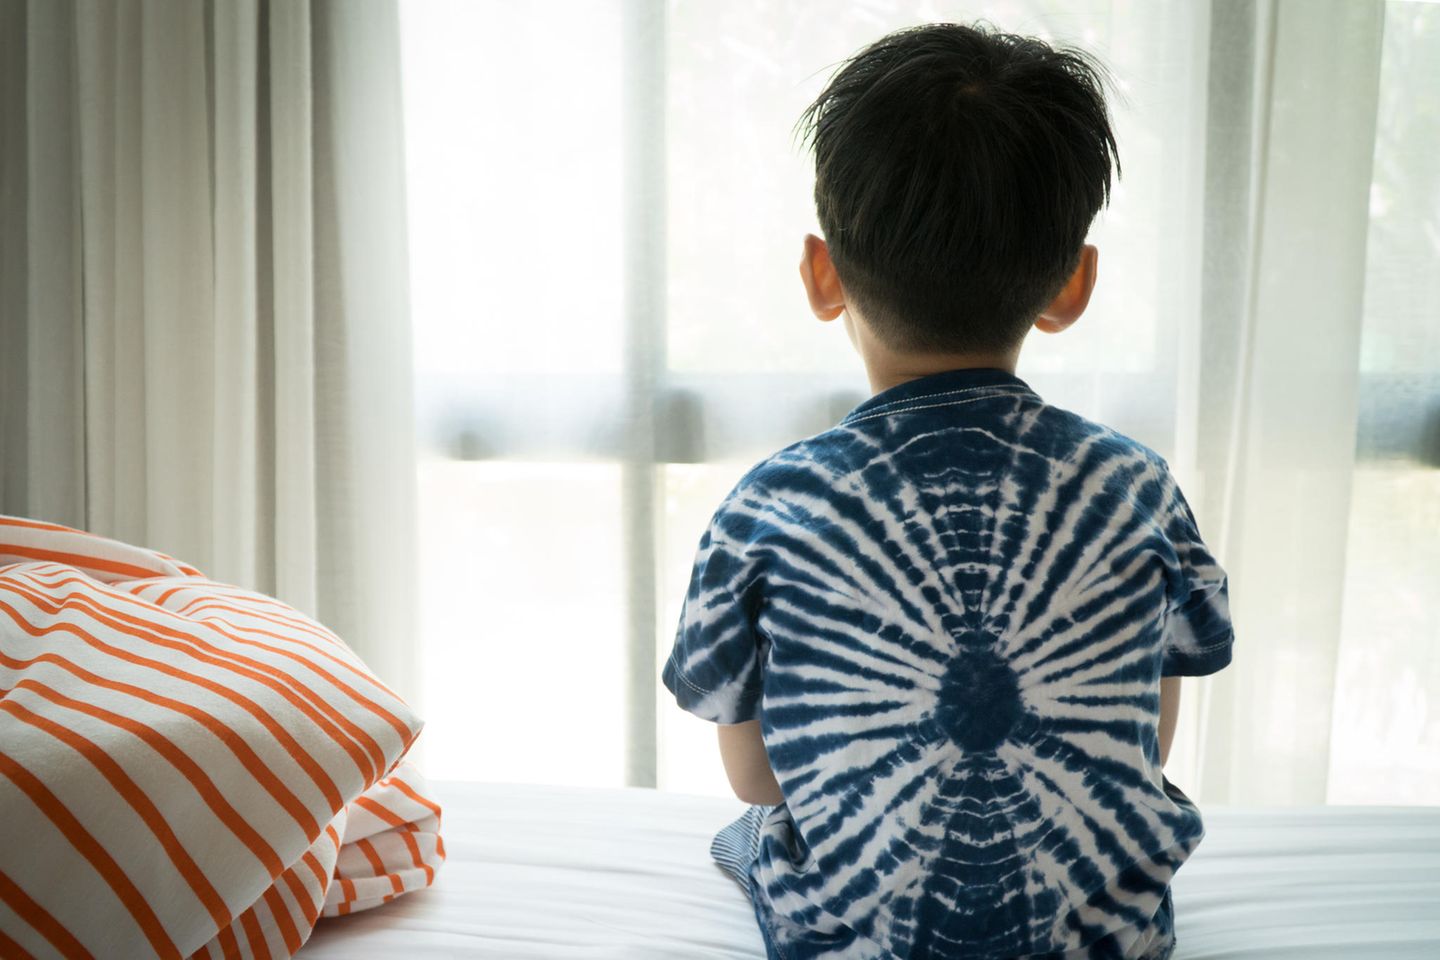 Kinderärzte warnen: Junge sitzt auf dem Bett